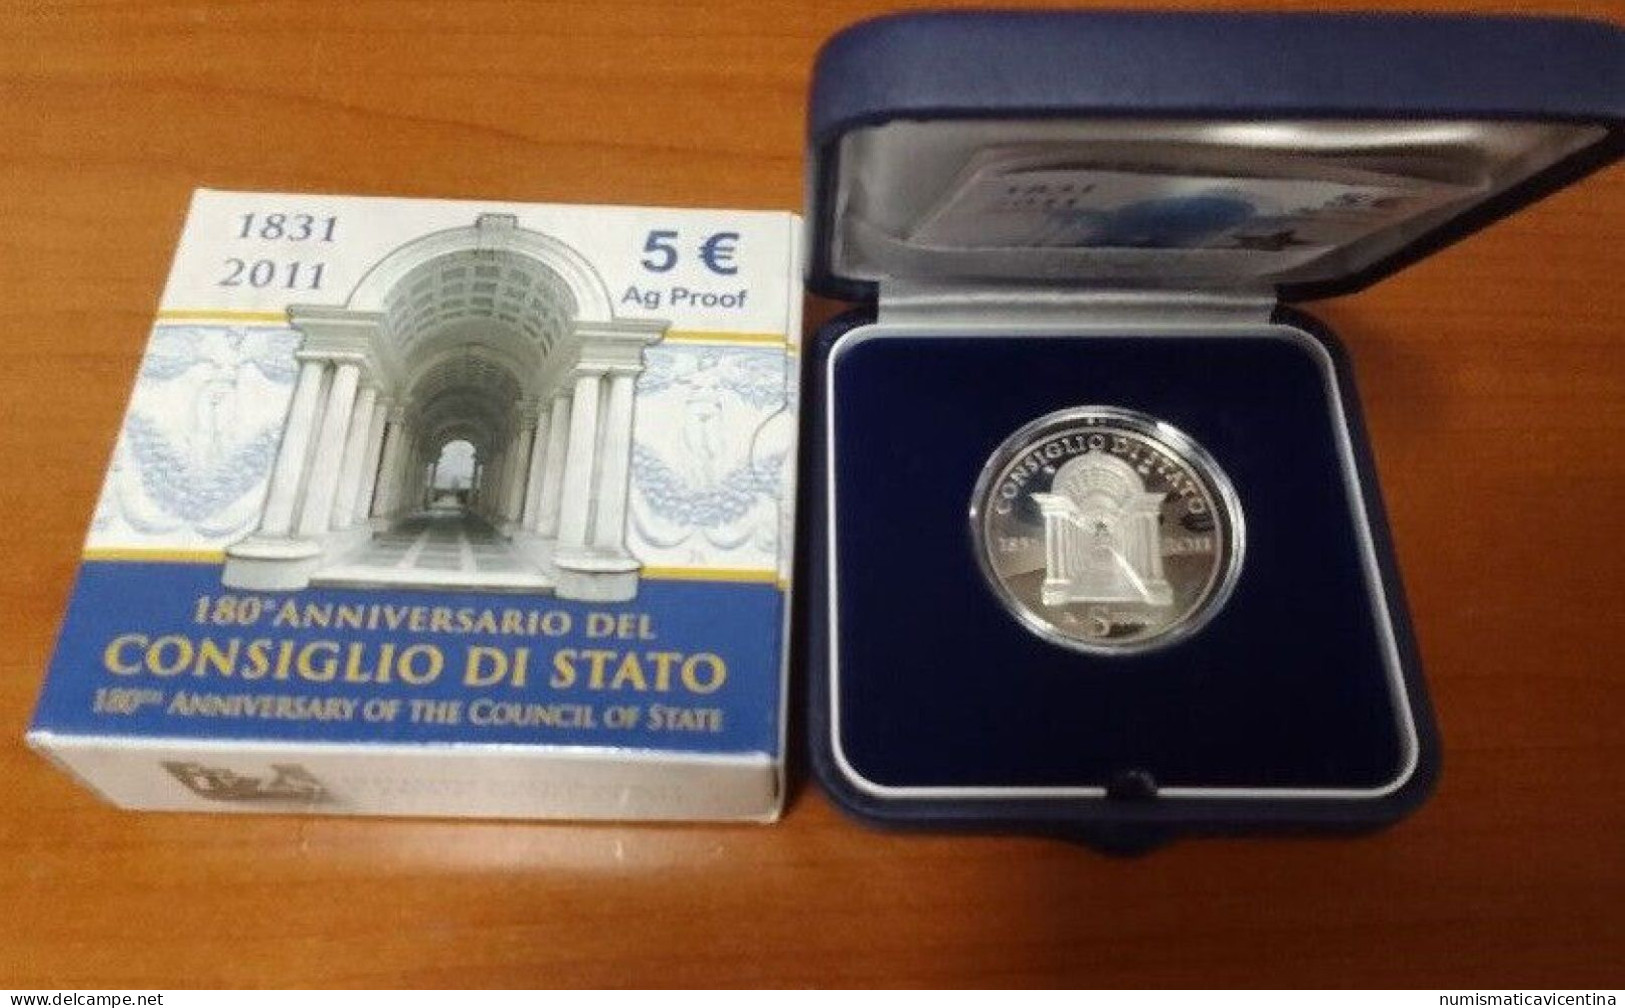 Italia 5 Euro 2011 Consiglio Di Stato 180° Anniversario € Silver Coin UNC PROOF - Italy